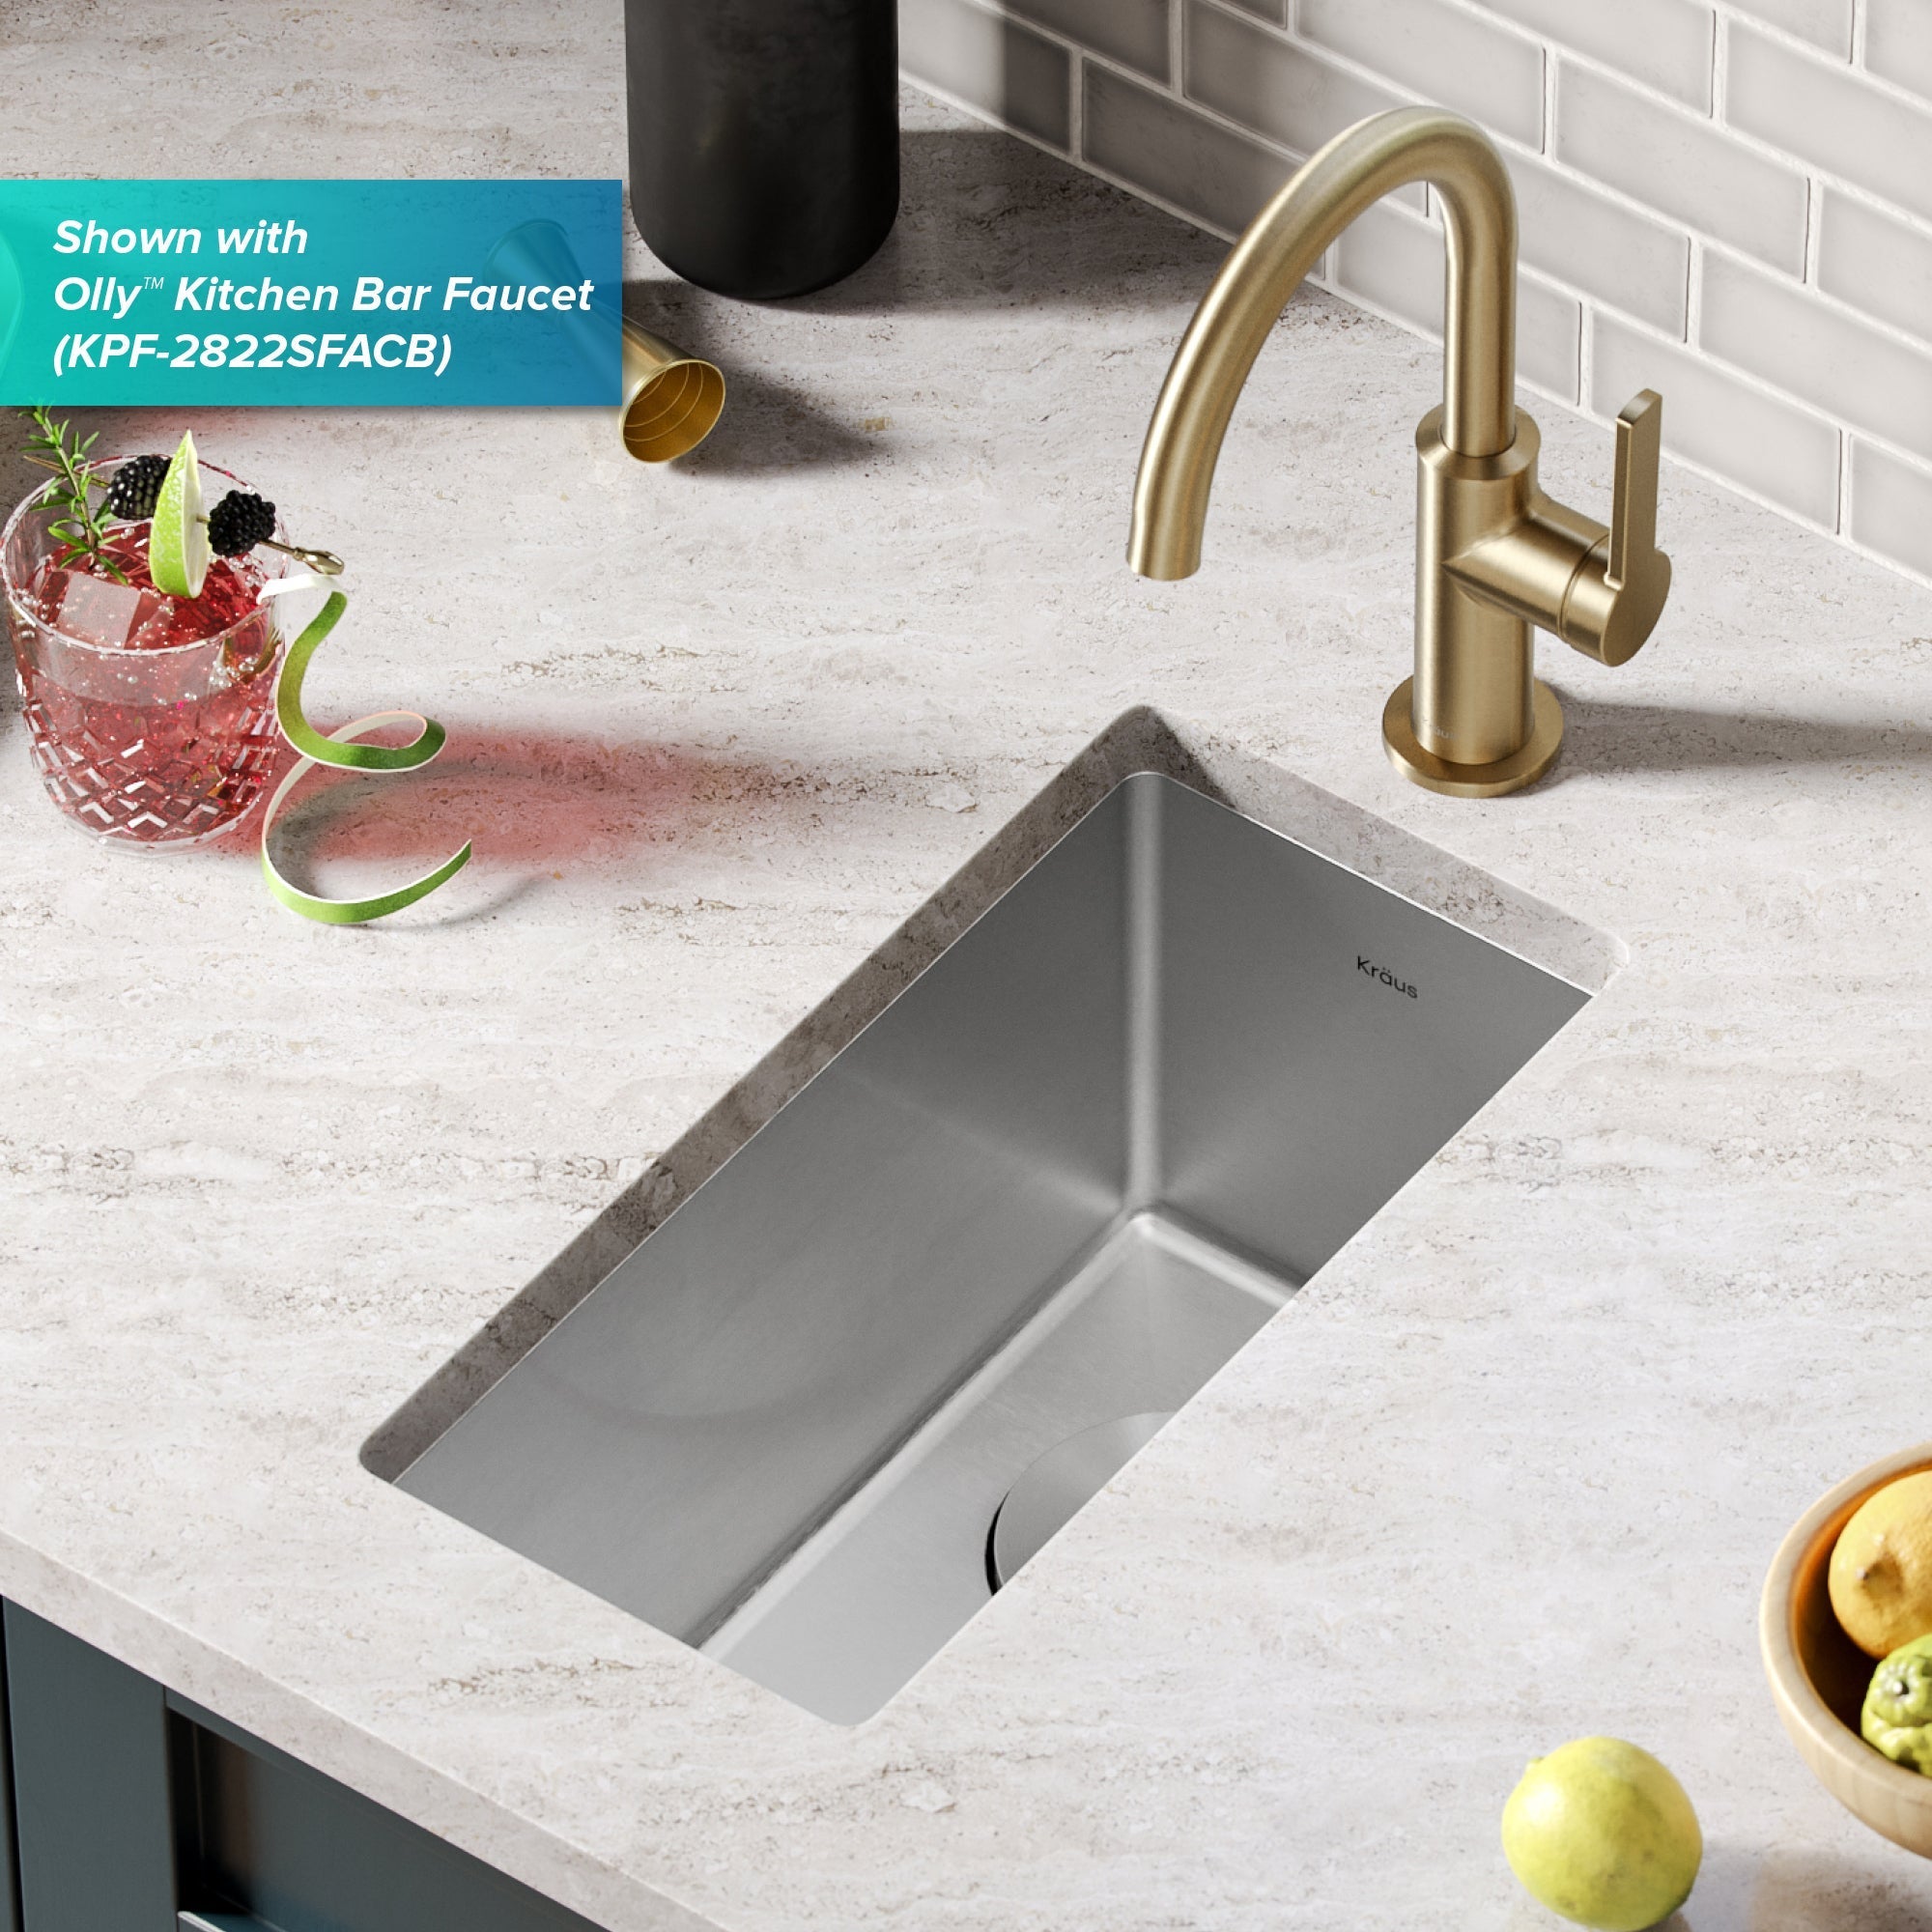 KRAUS 10" Undermount 16 Gauge Stainless Steel Bar Prep Sink-Kitchen Sinks-DirectSinks